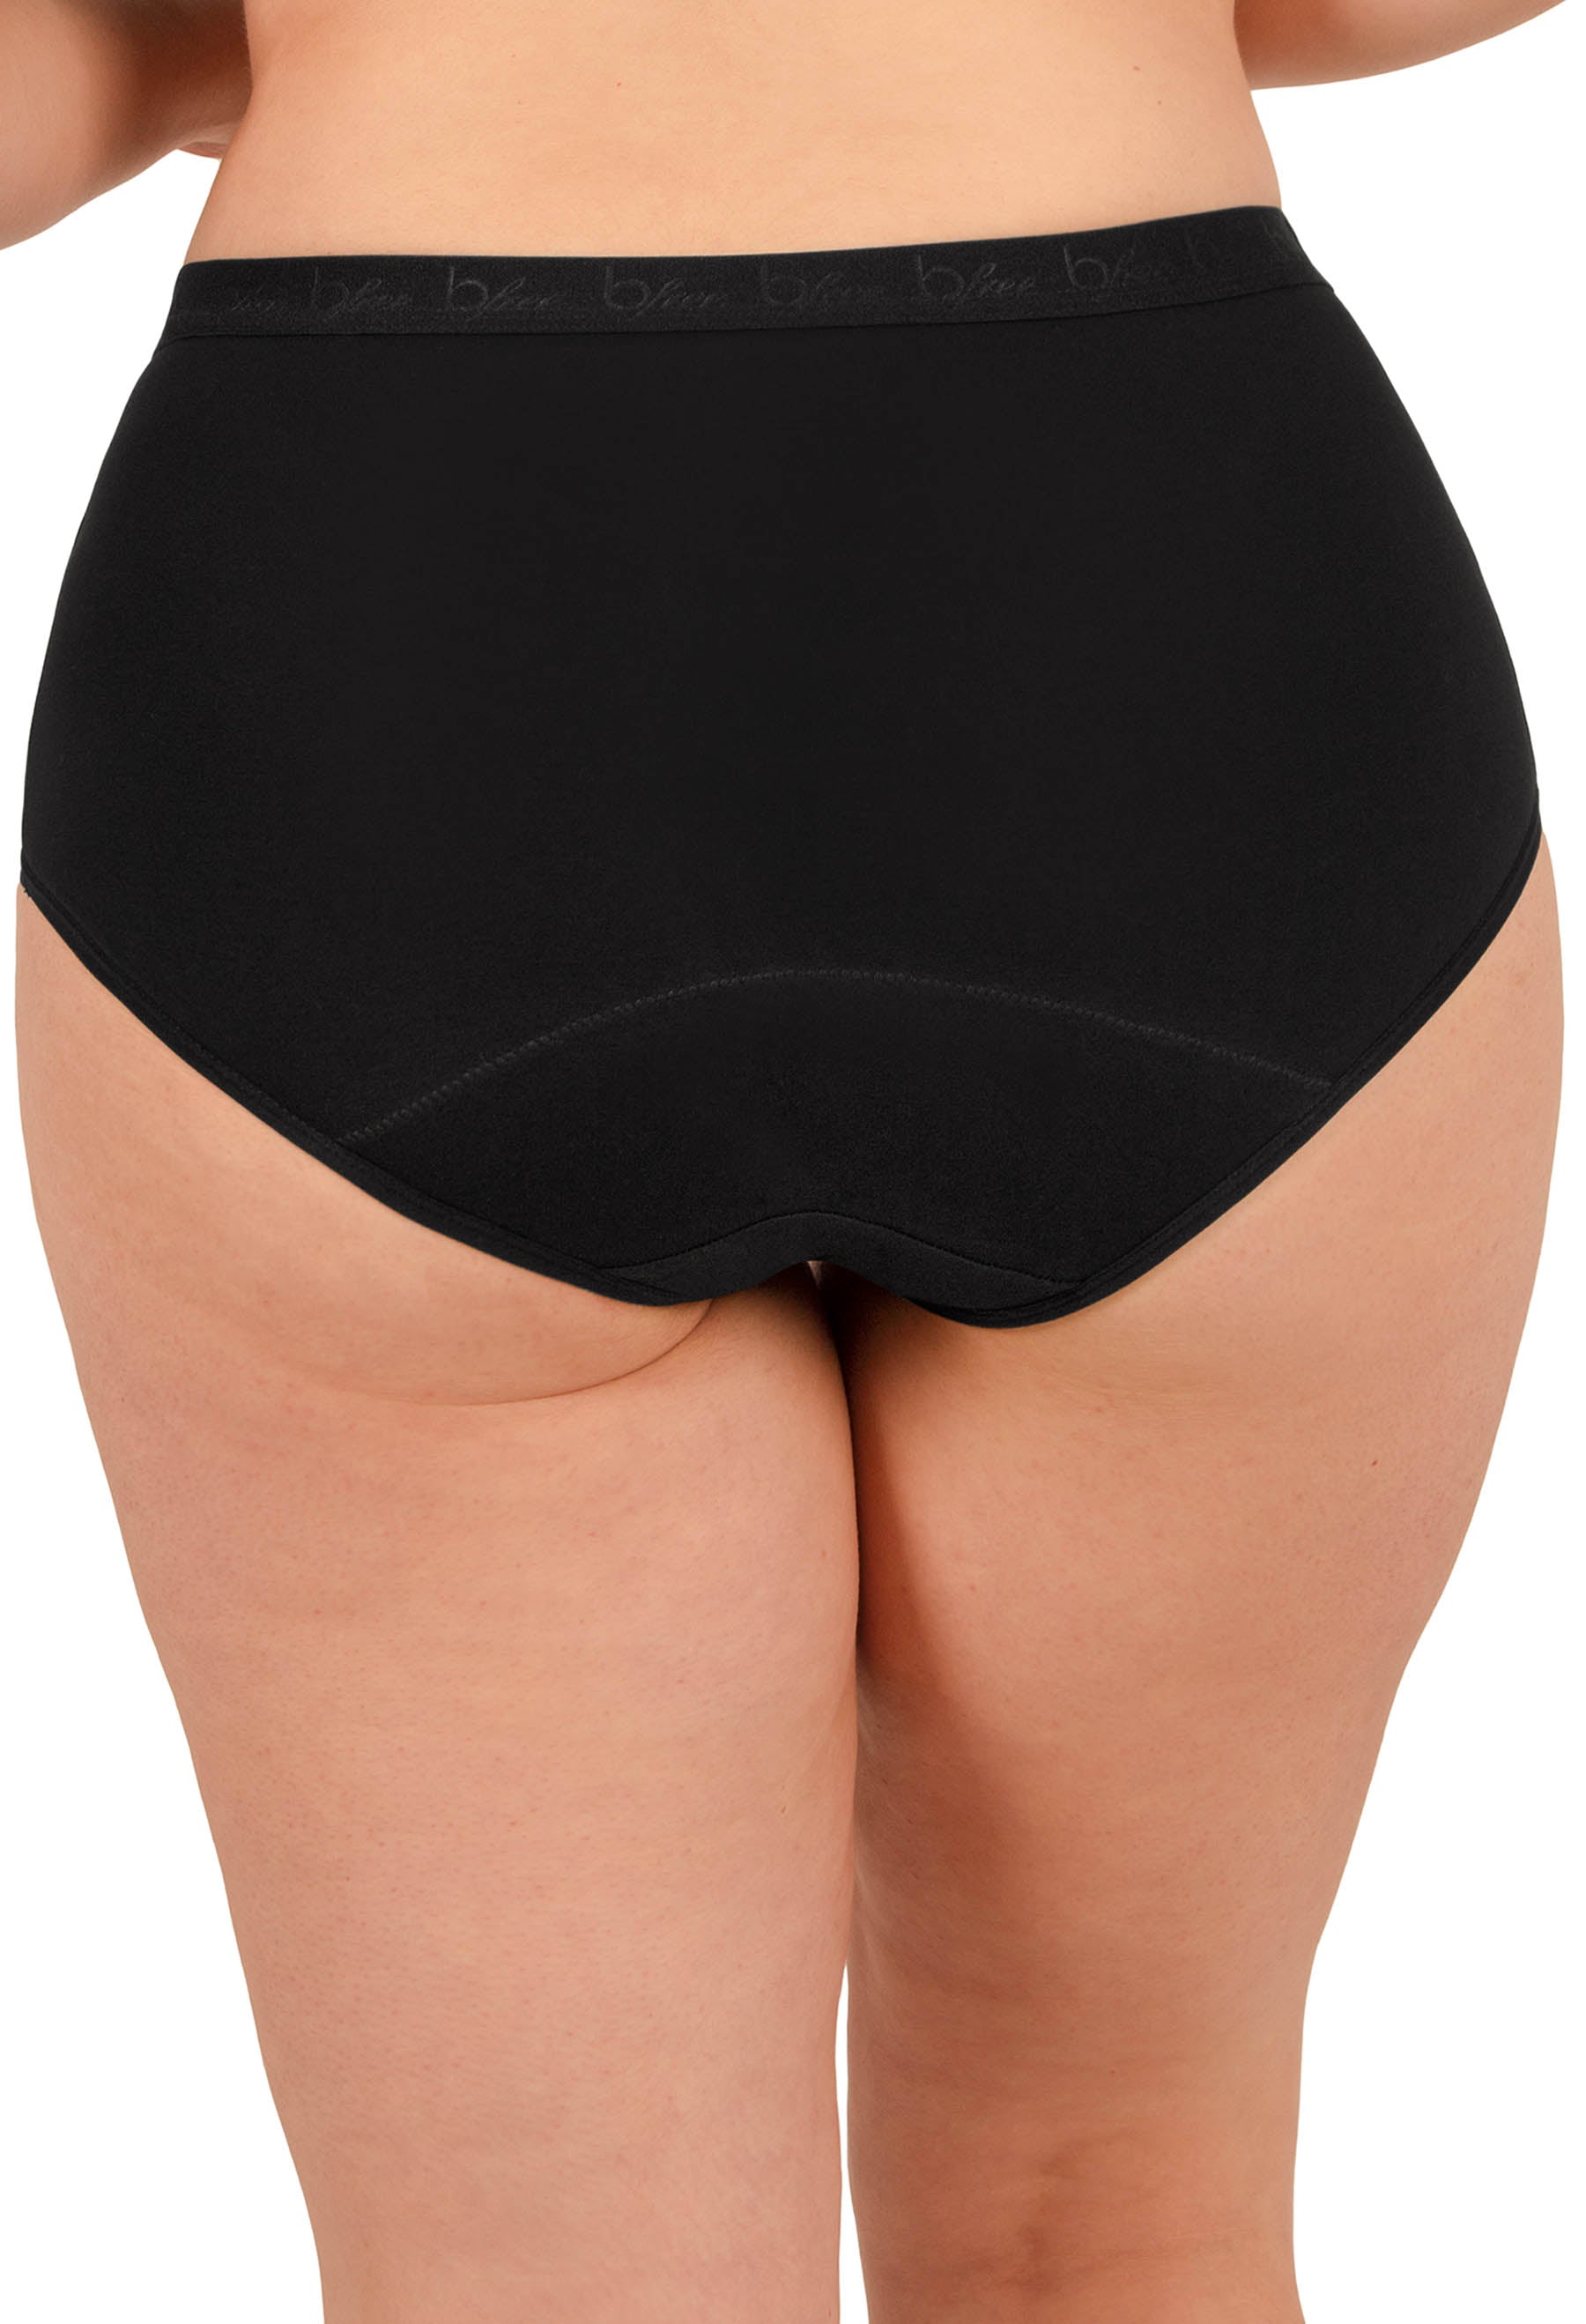 Cotton Fresh Guard Pantyliner Underwear - 5 Pack